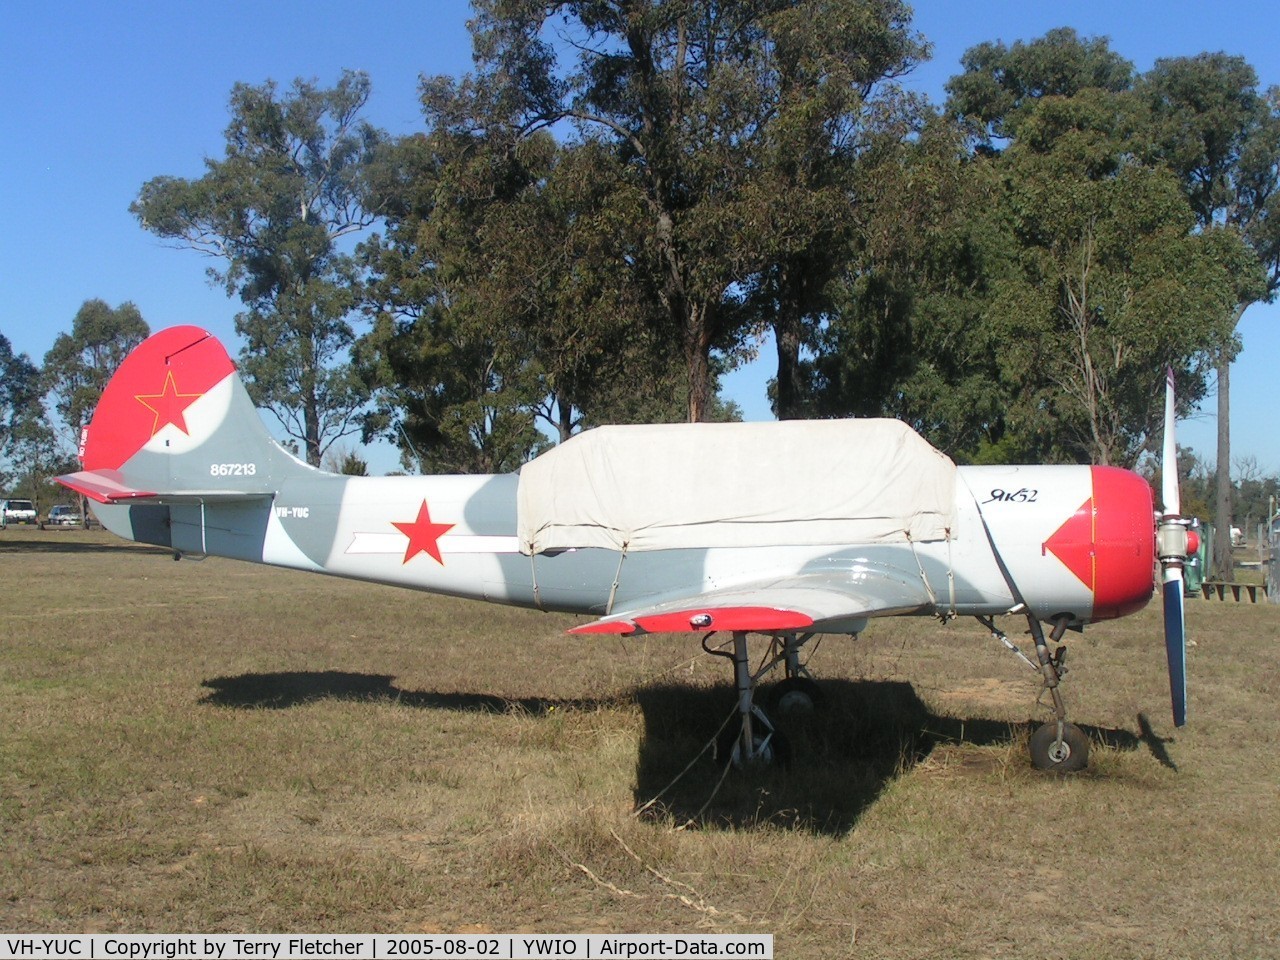 VH-YUC, 1986 Yakovlev Yak-52 C/N 867213, Yak 52 at Wilton /Picton